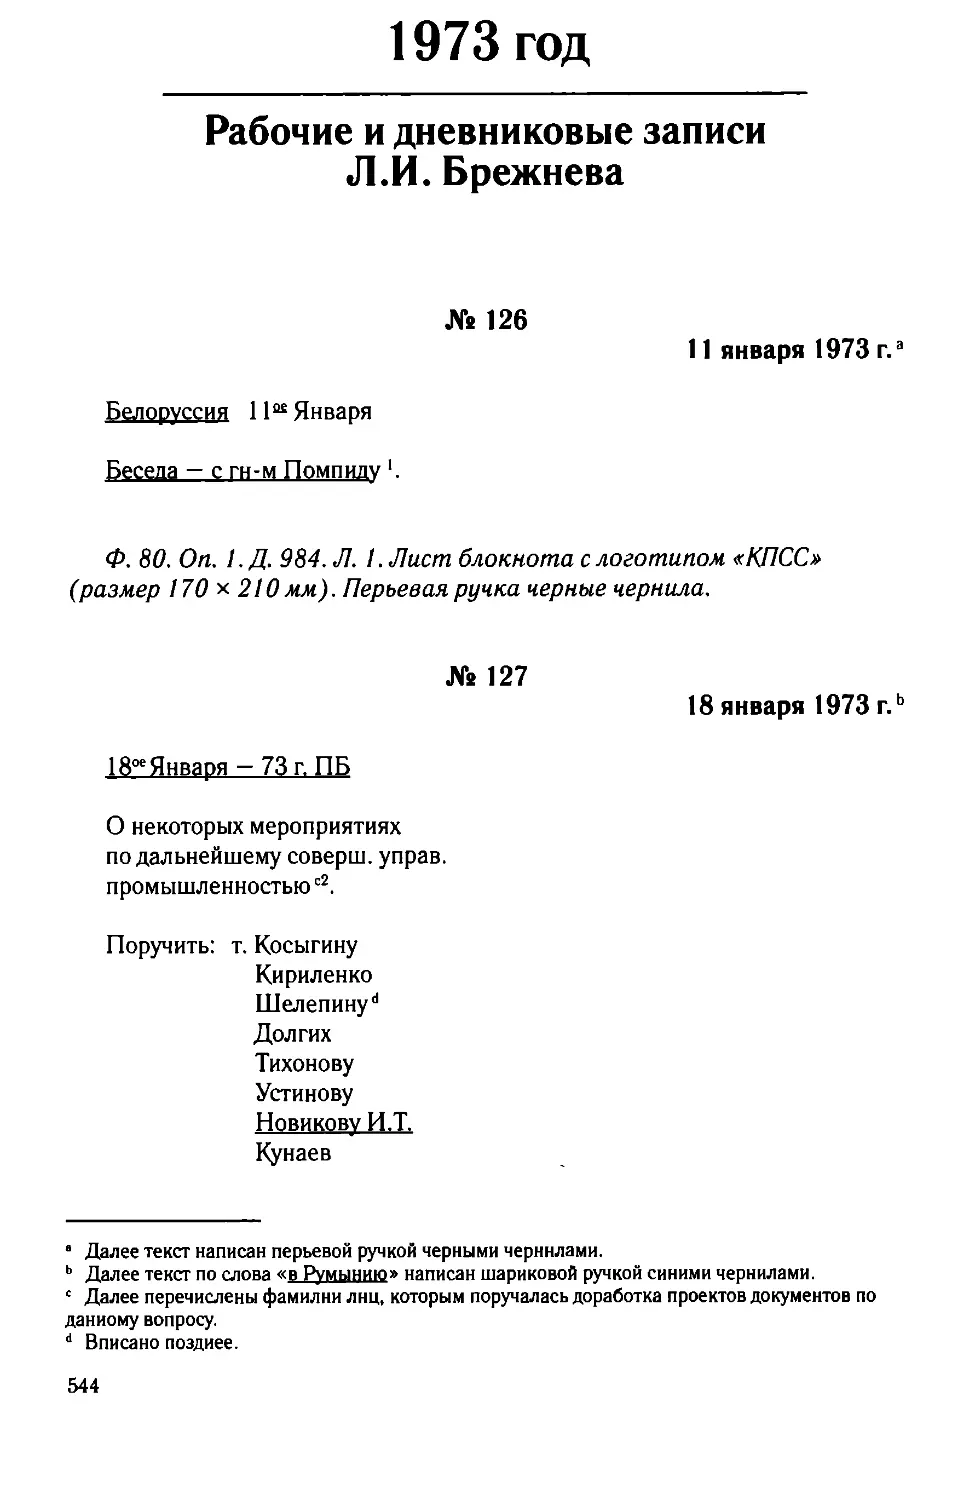 Рабочие и дневниковые записи Л.И. Брежнева. 1973 год